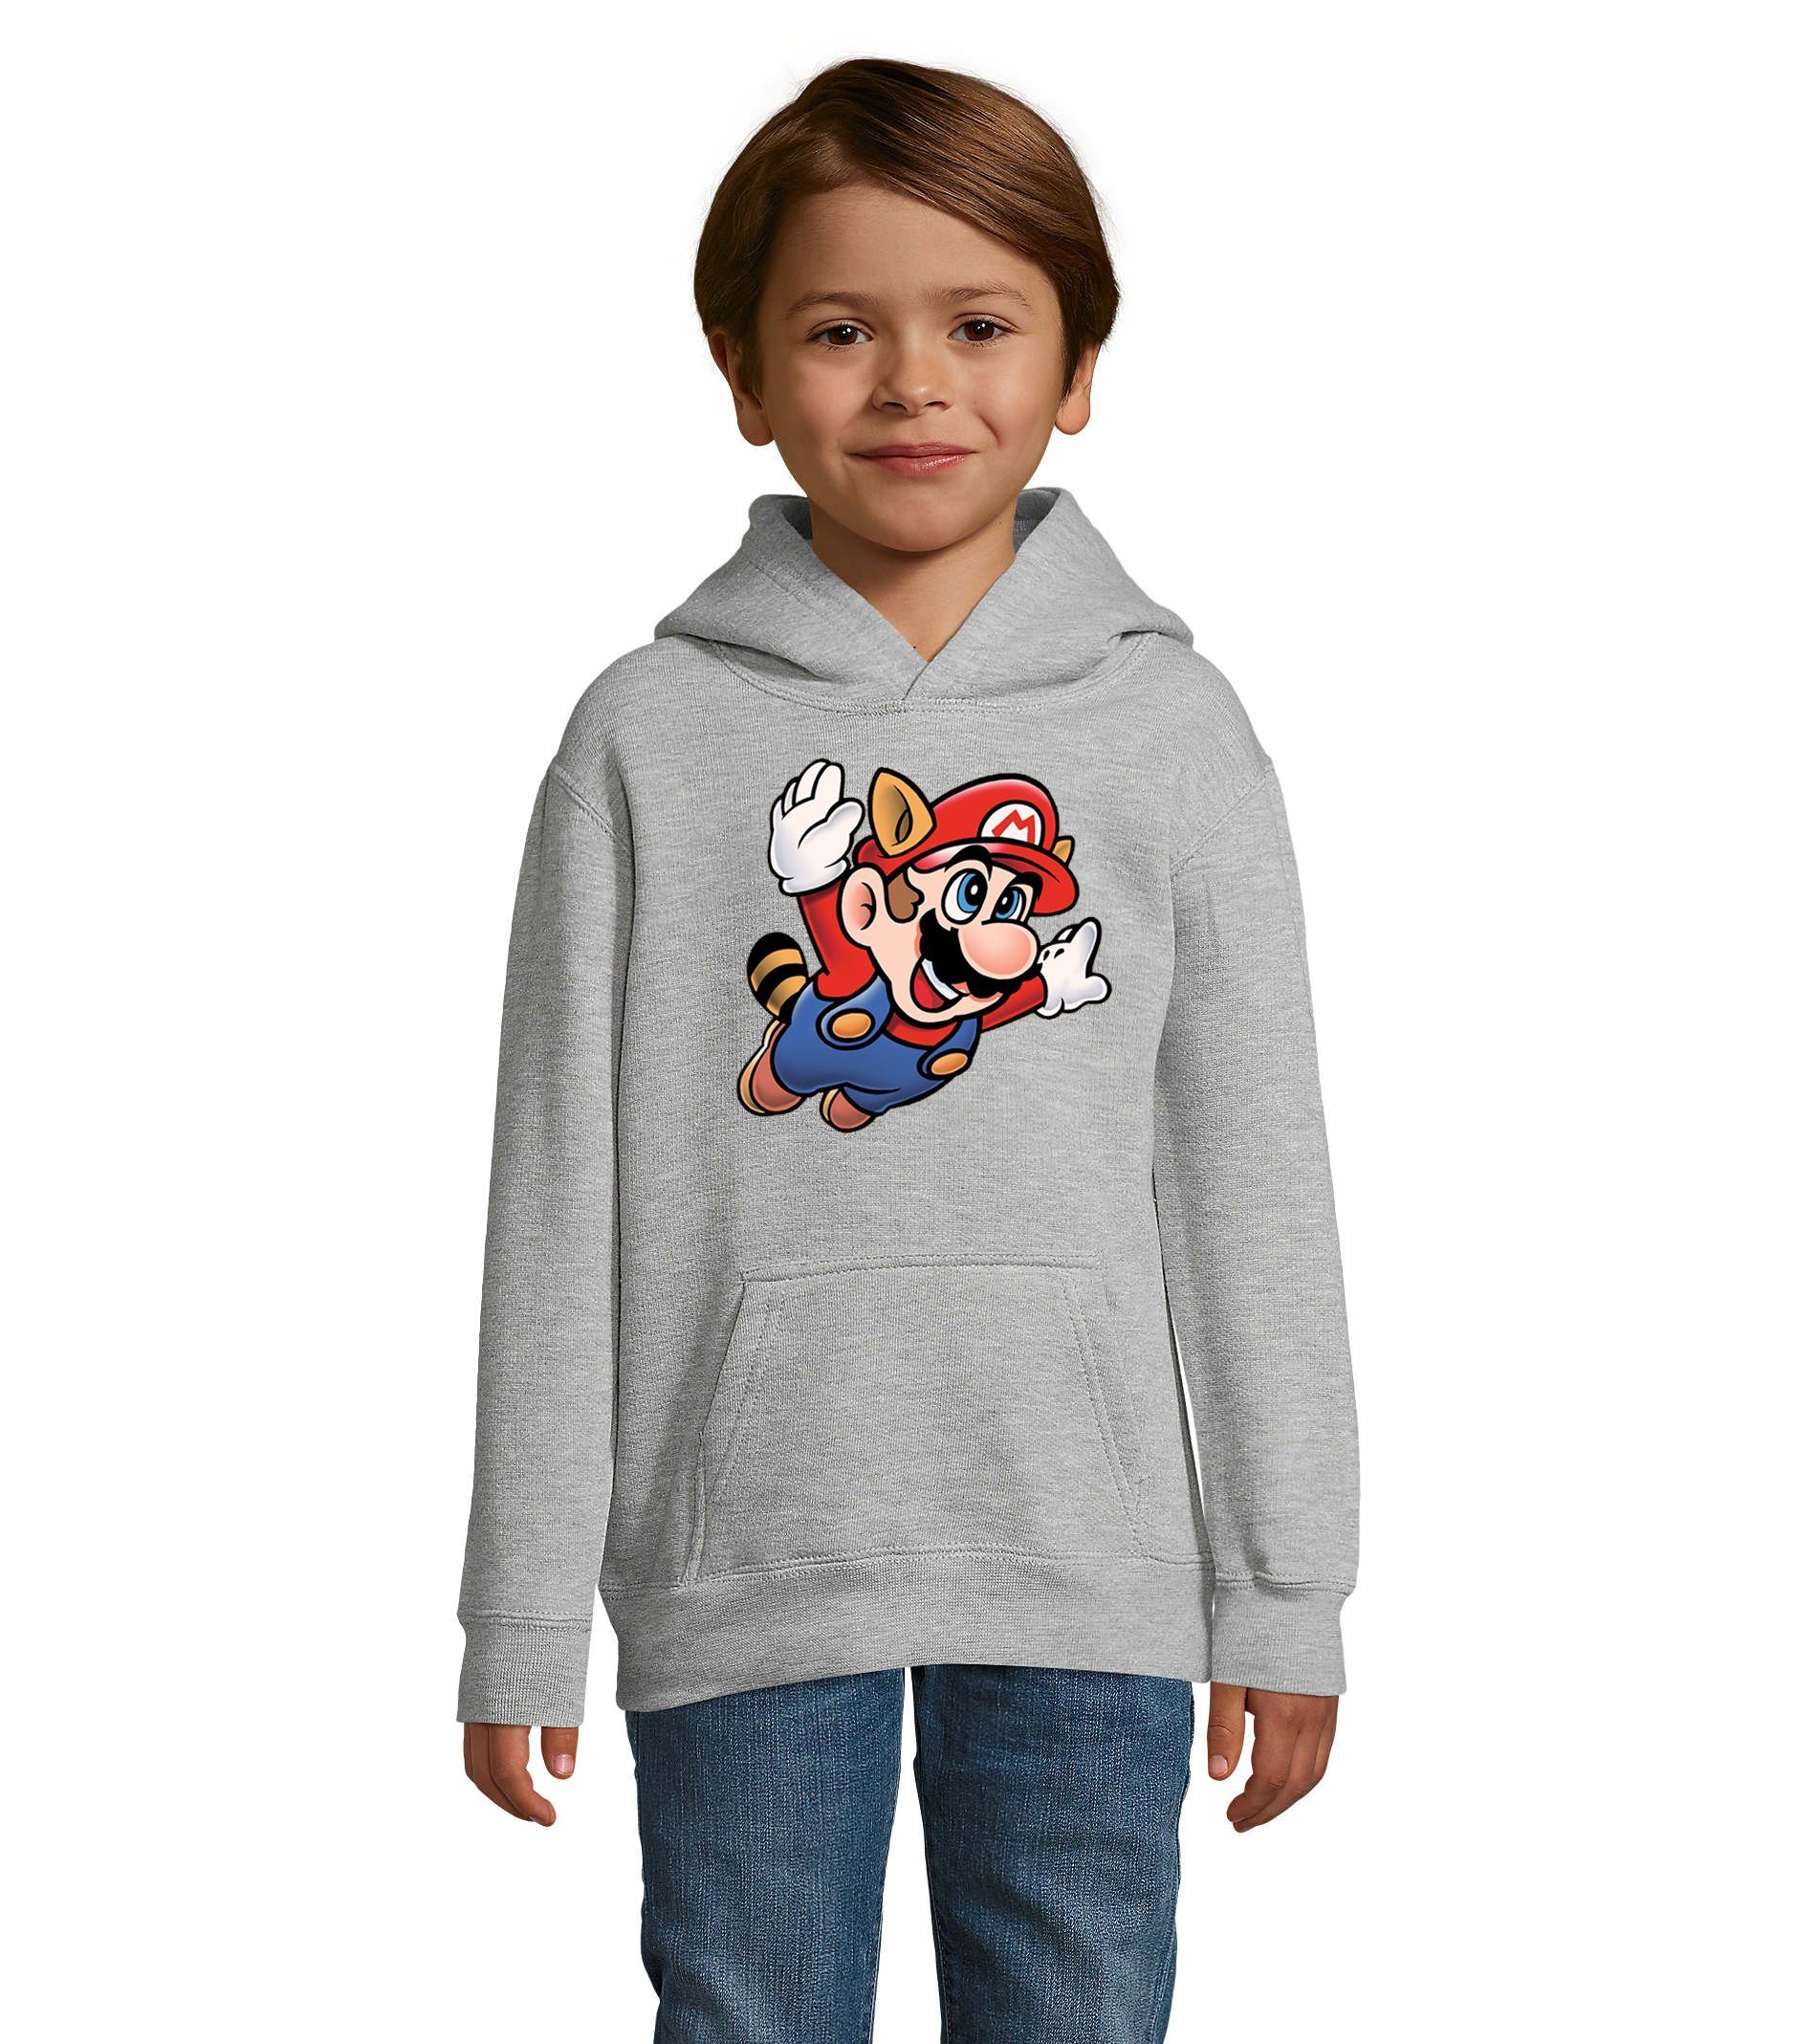 Blondie & Brownie Hoodie Kinder Jungen & Mädchen Super Mario 3 Fligh Nintendo mit Kapuze Grau